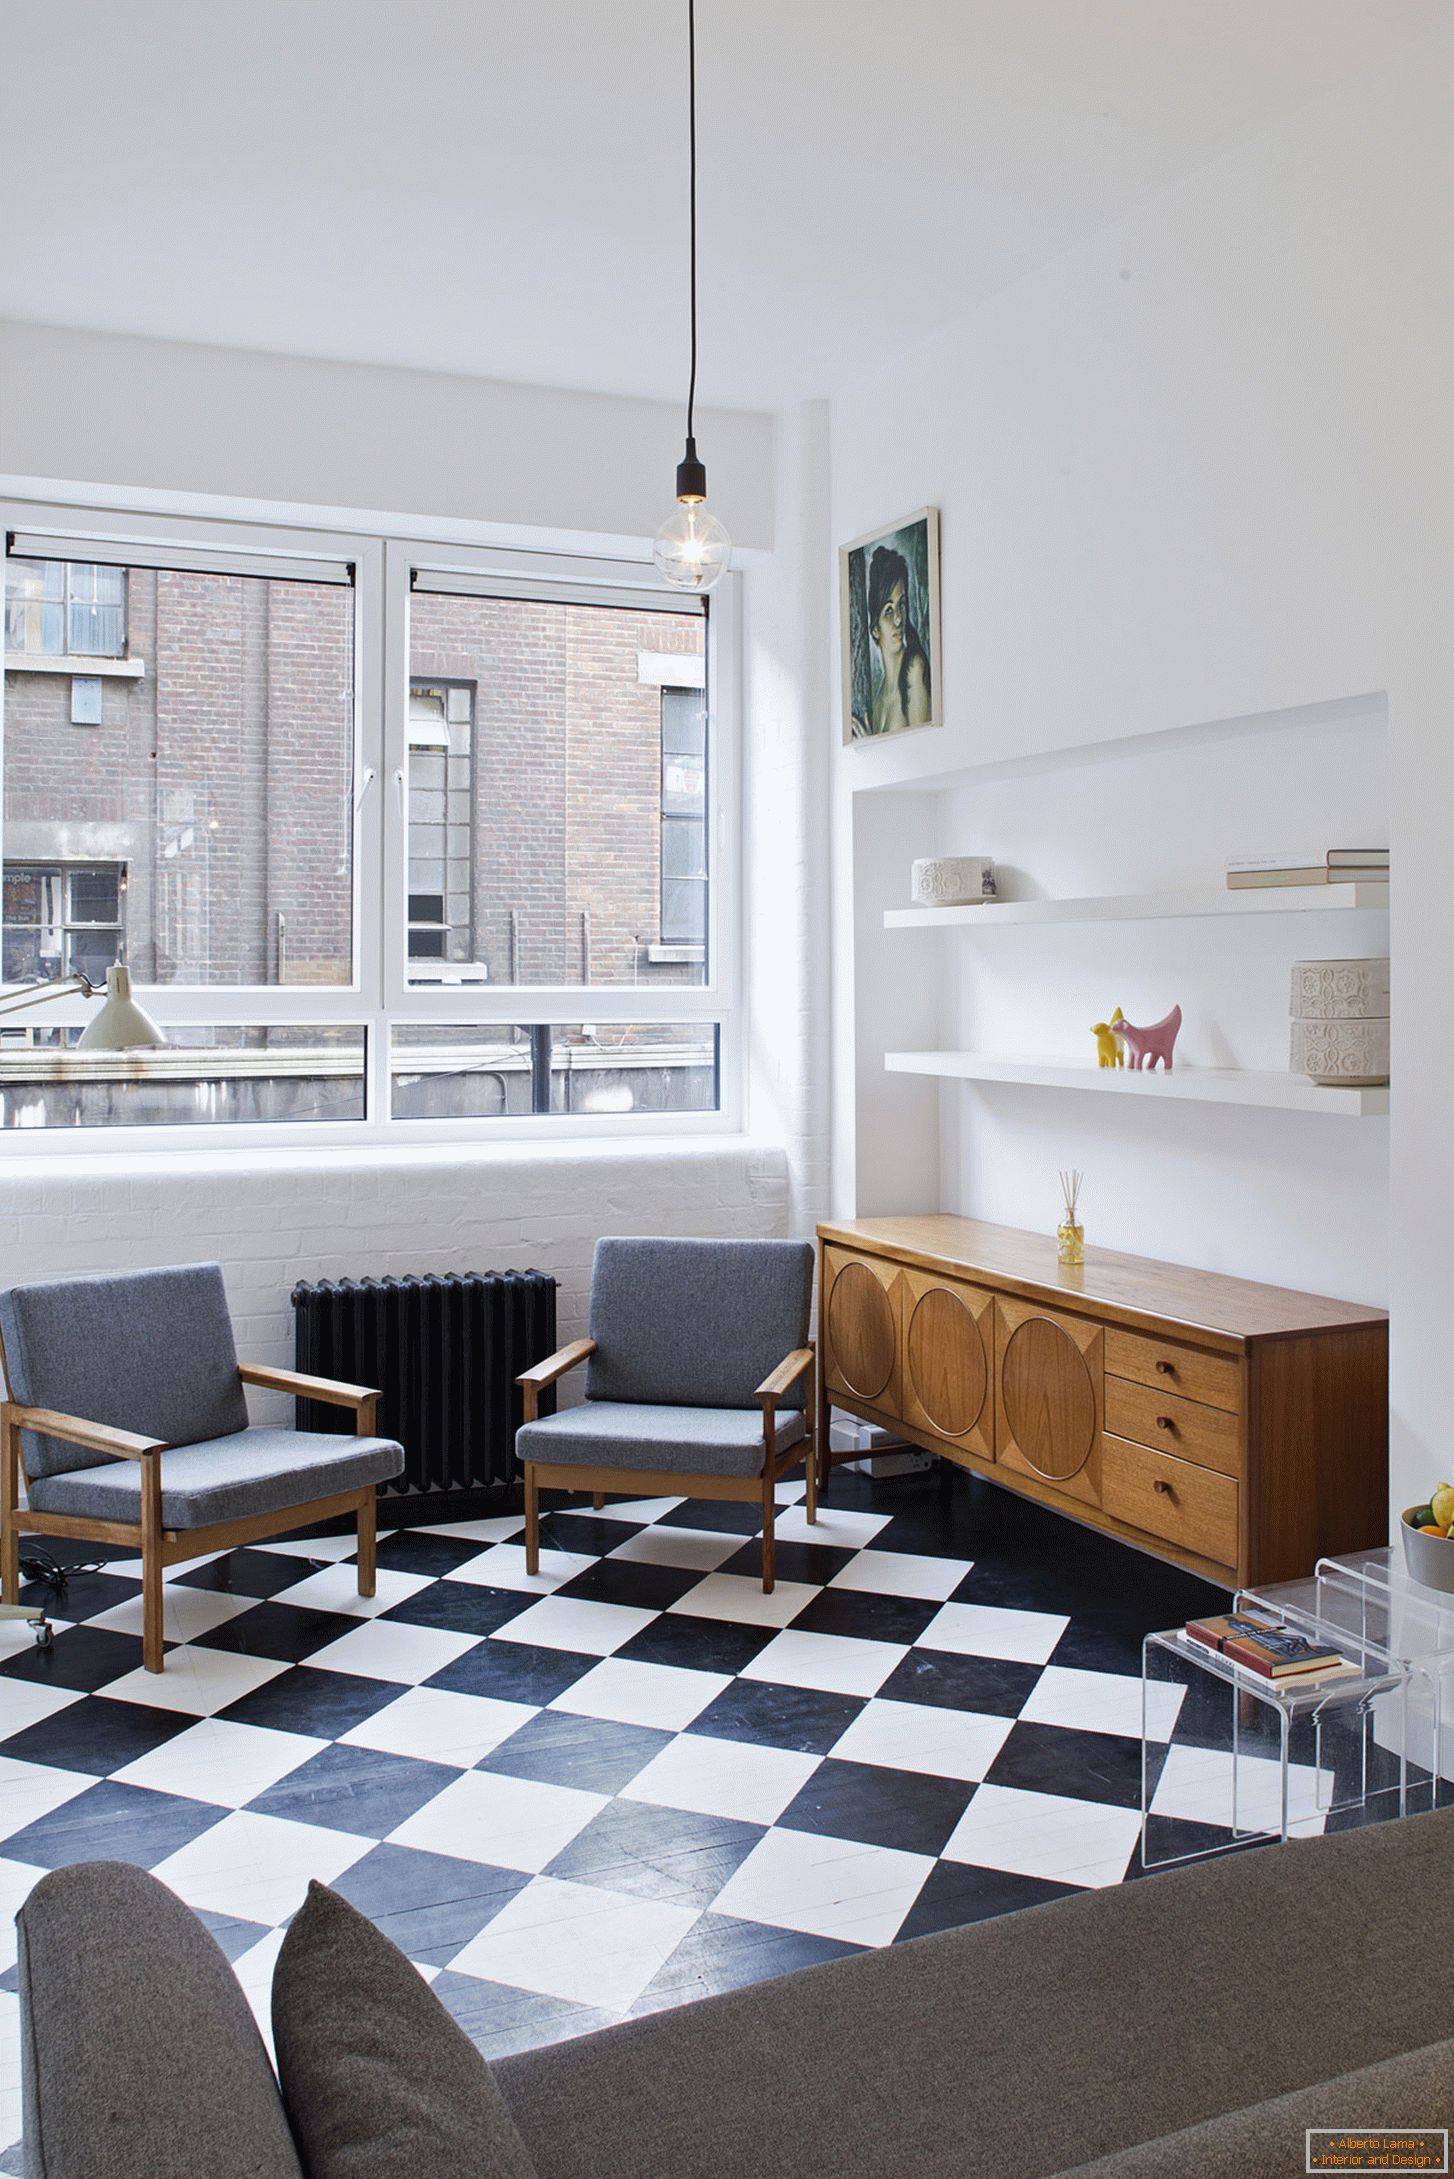 City View House - panadería, convertida en un apartamento estudio residencial, Londres, Reino Unido